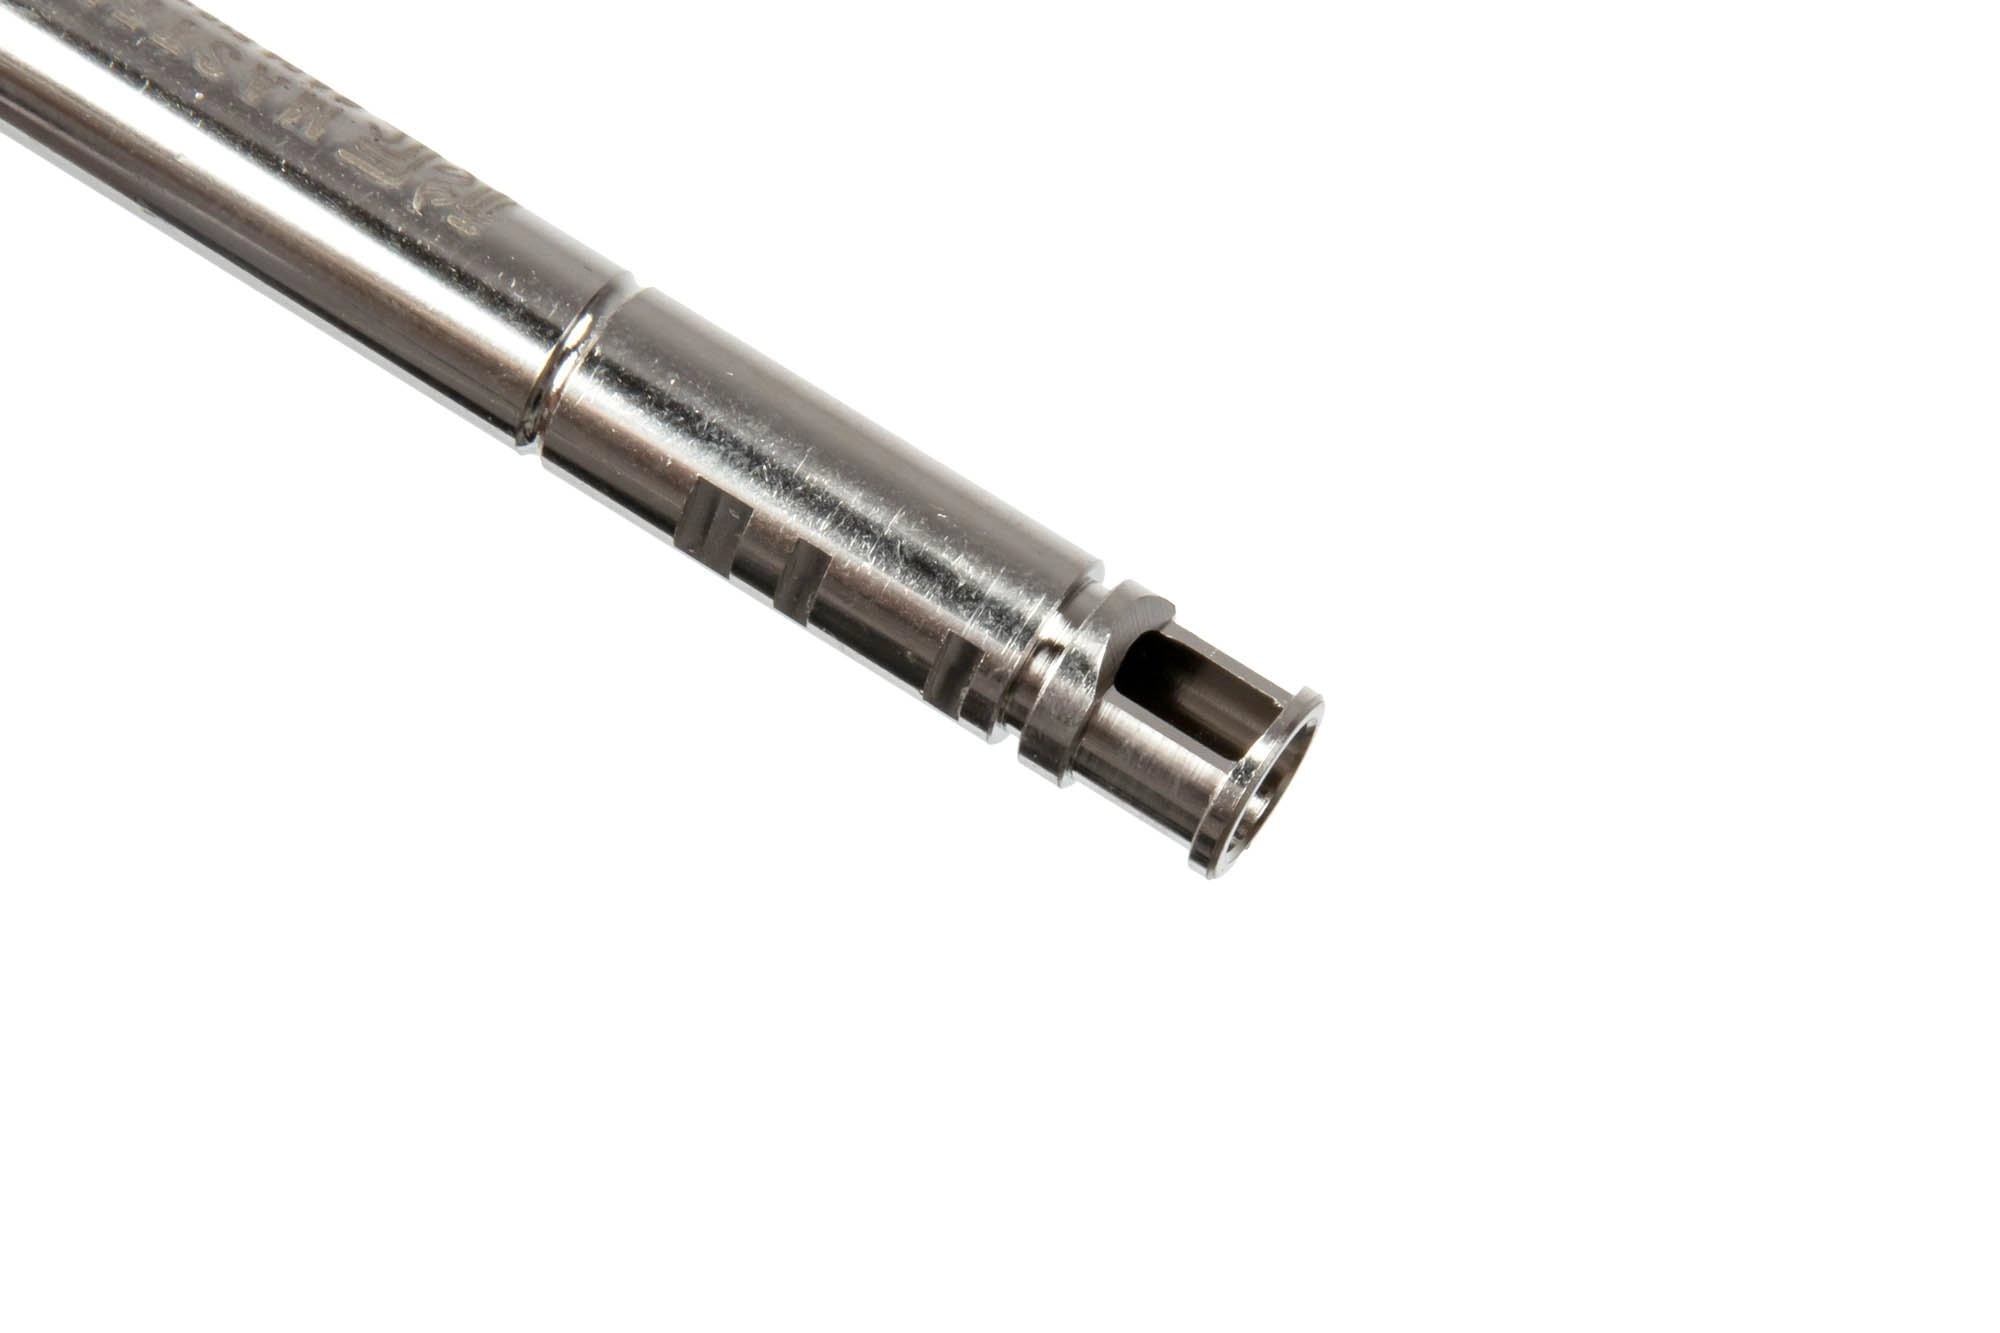 R-Hop 6.04 Precision Barrel for AEG / GBB replicas - 300mm-1